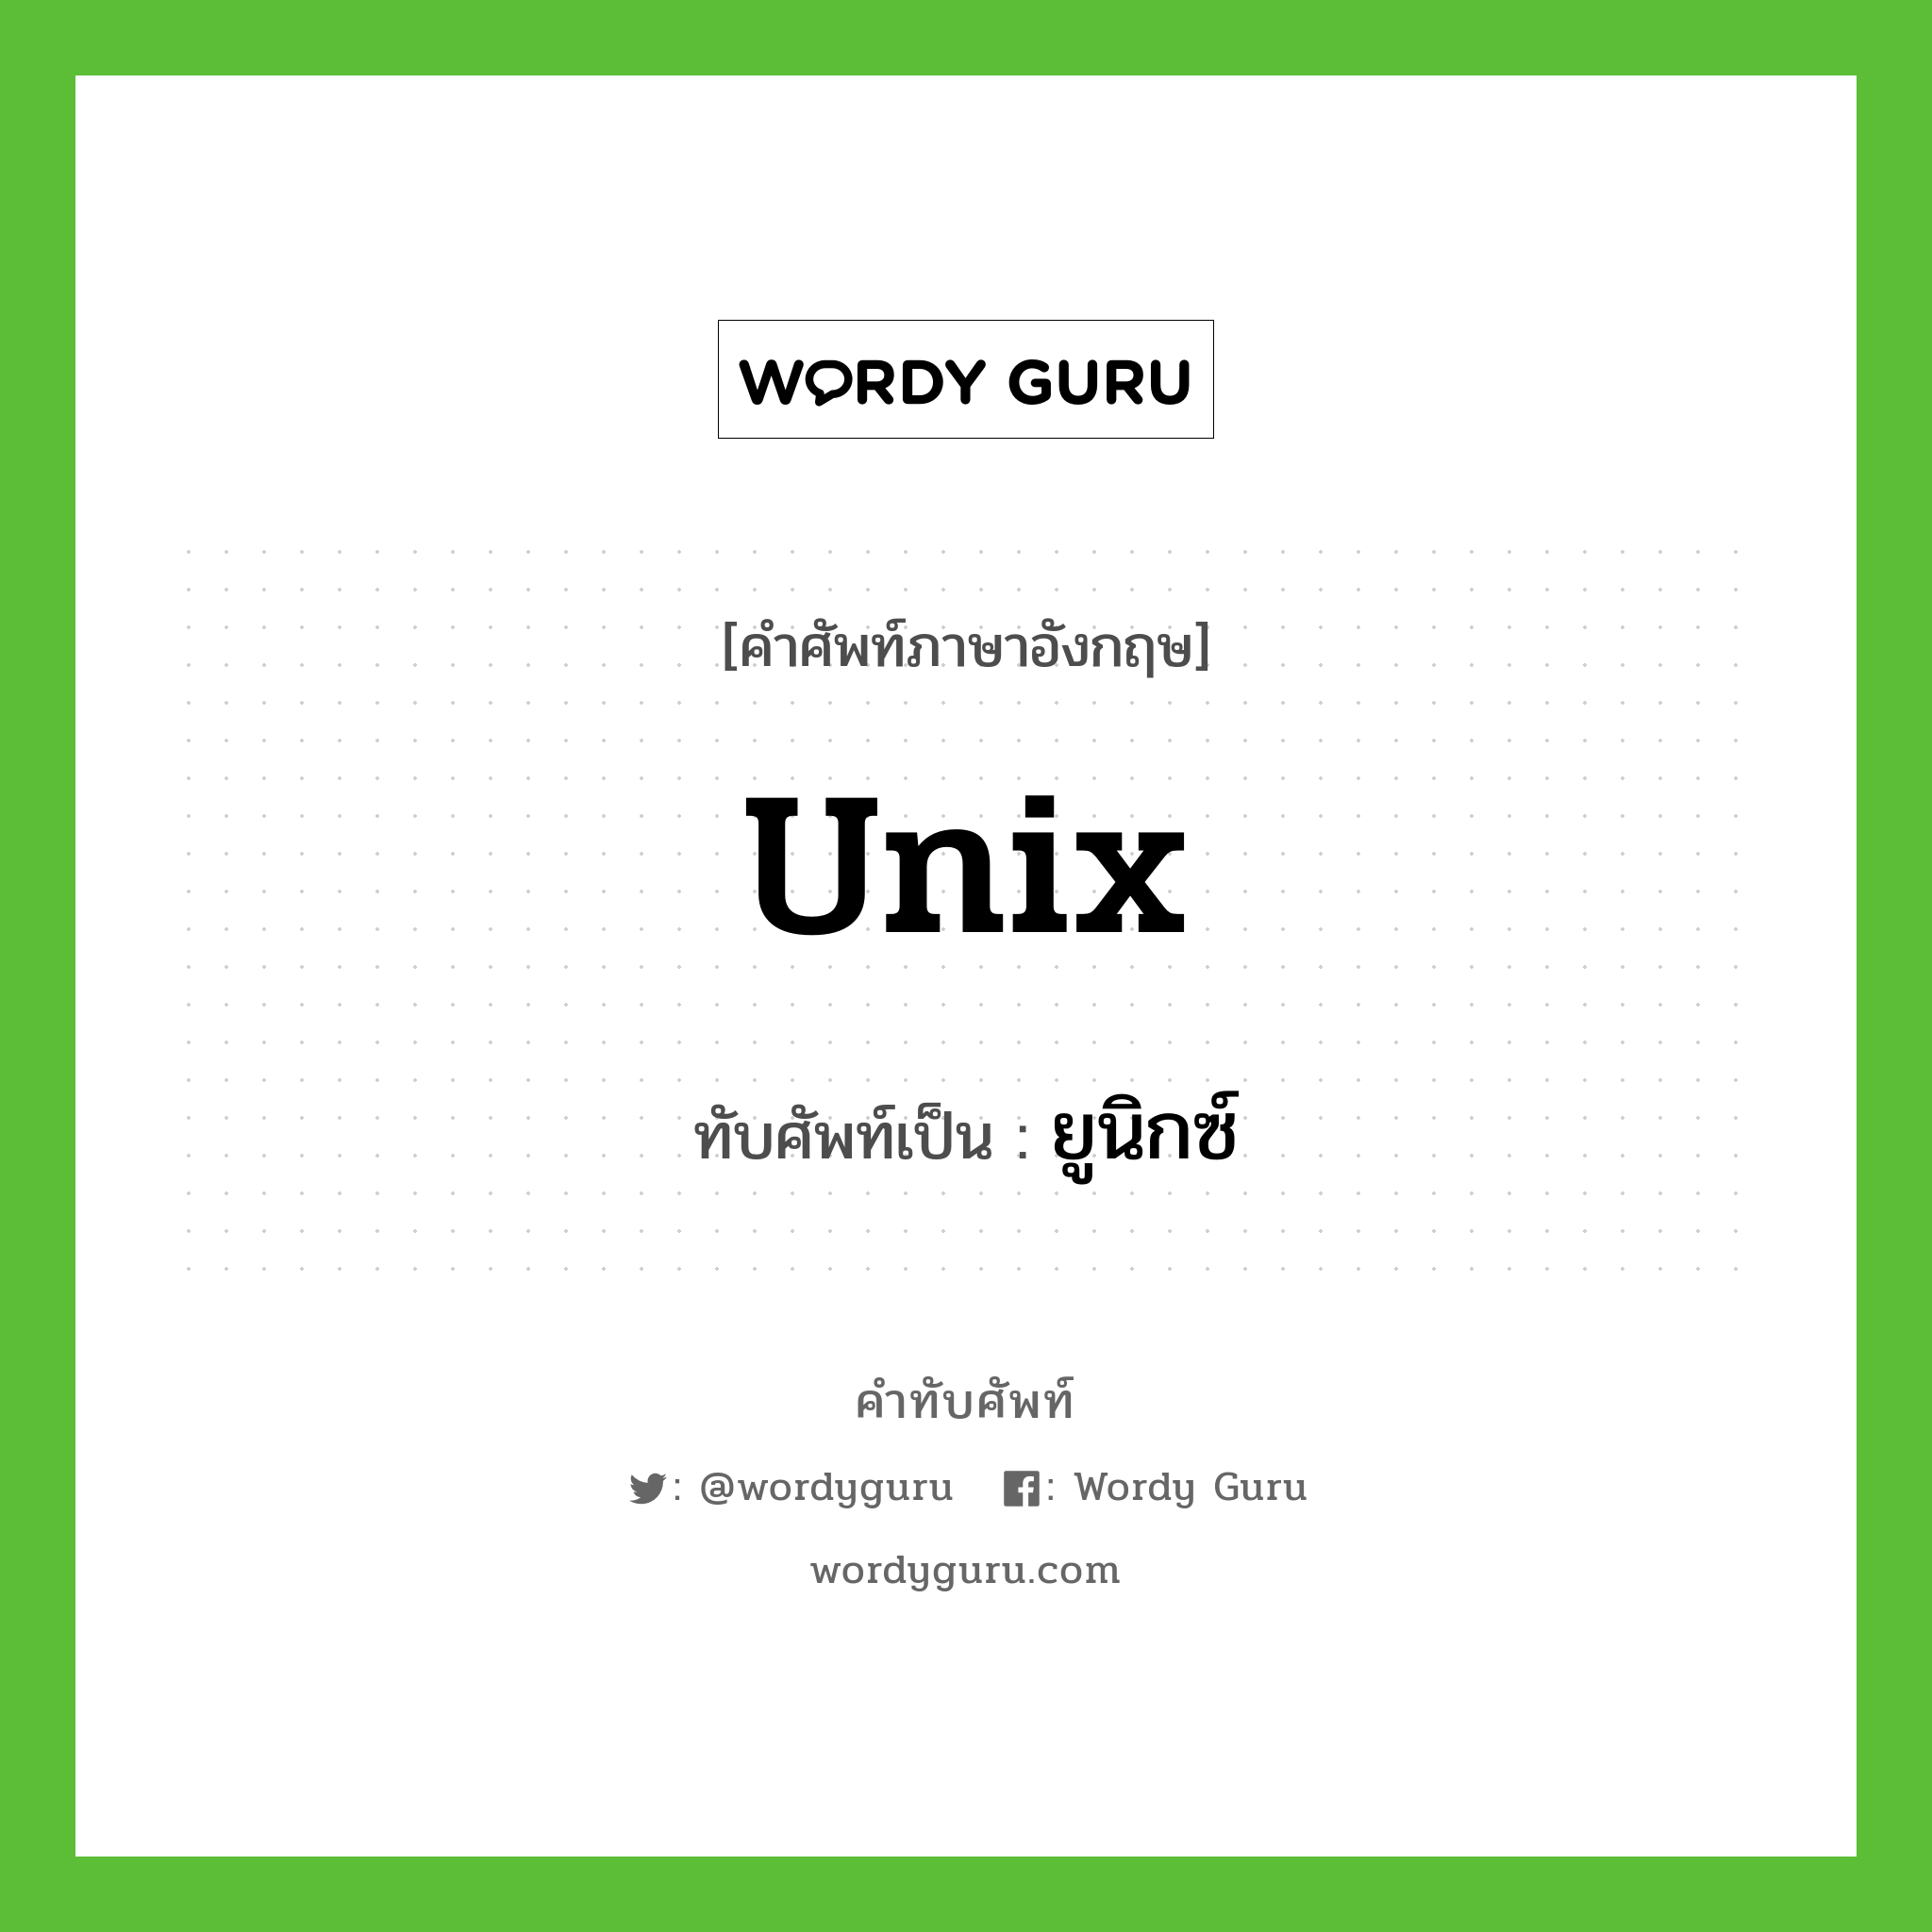 Unix เขียนเป็นคำไทยว่าอะไร?, คำศัพท์ภาษาอังกฤษ Unix ทับศัพท์เป็น ยูนิกซ์